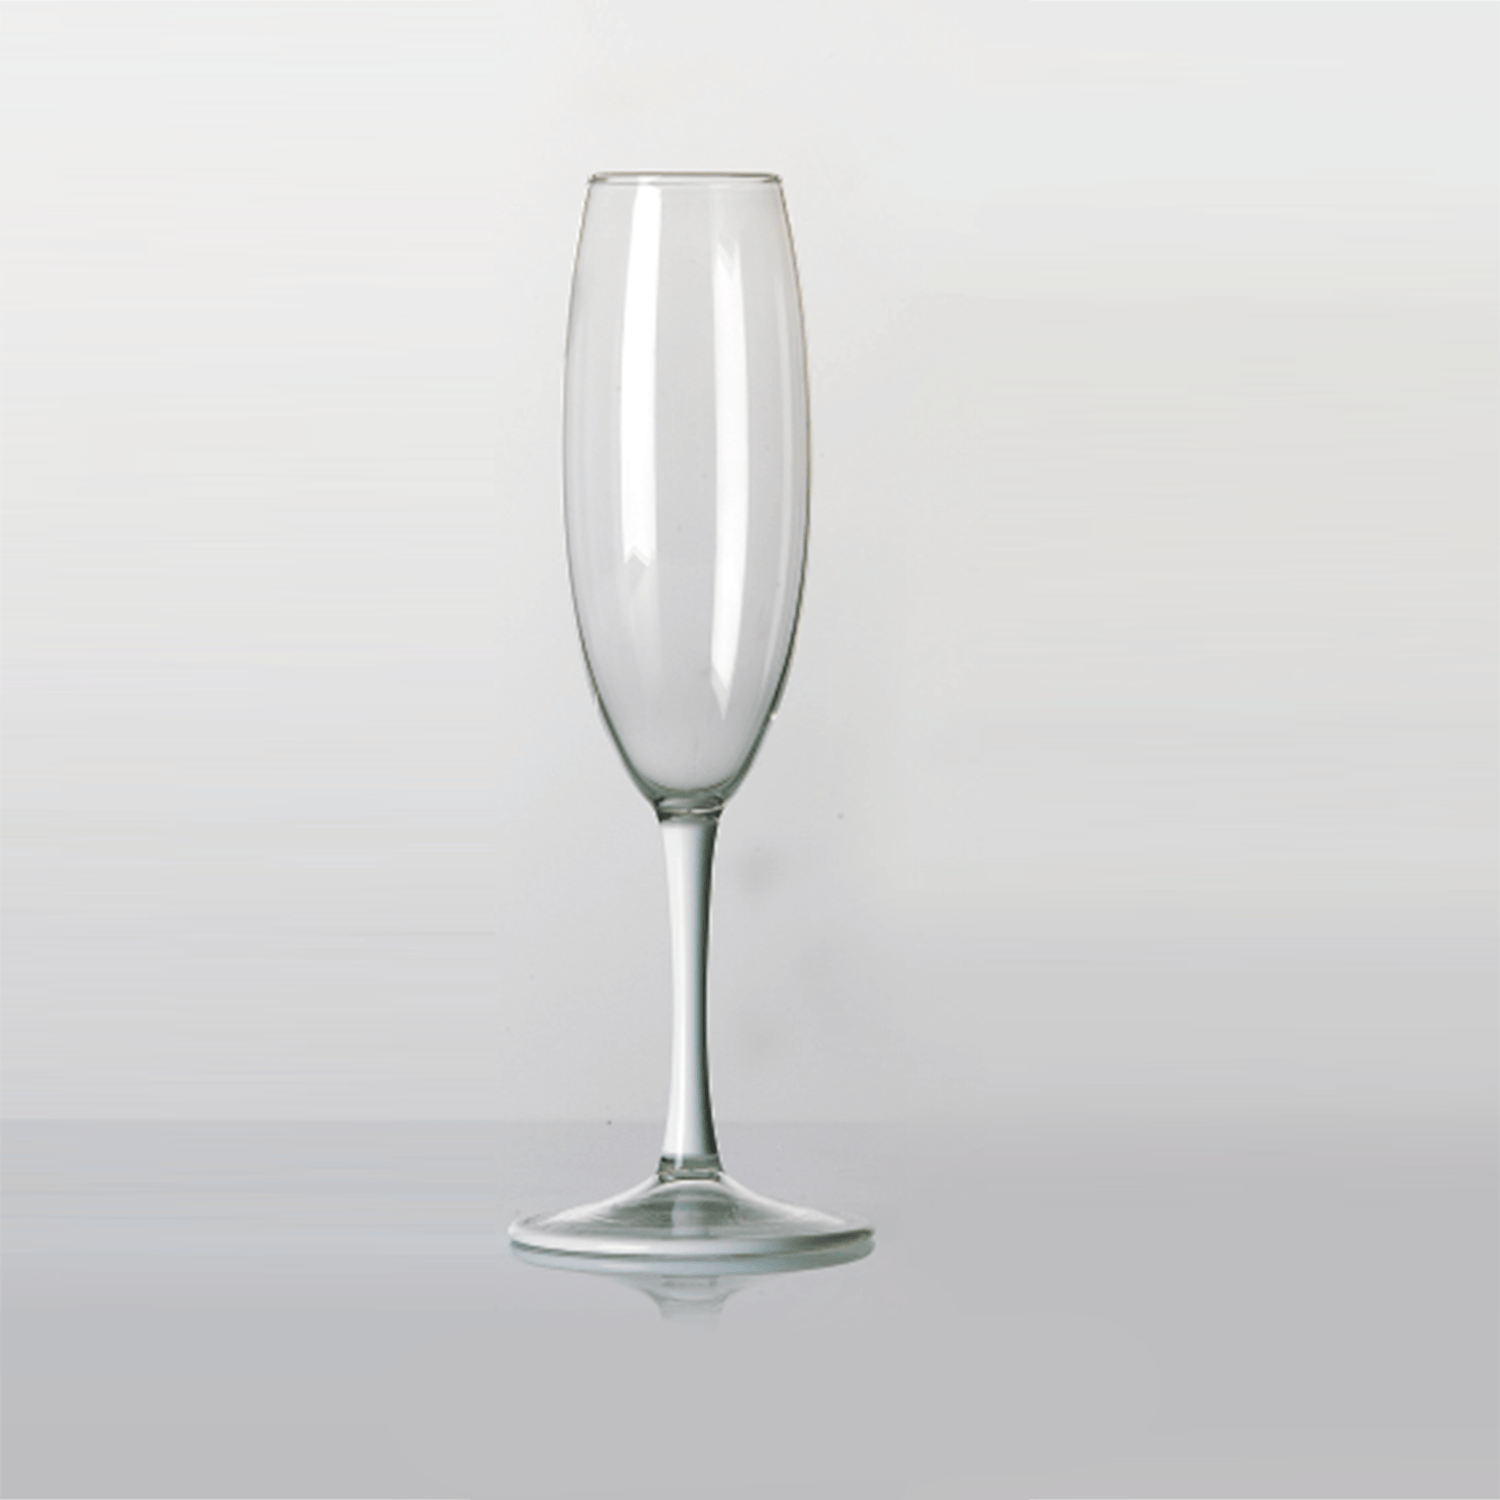 Arte di Murano Smooth Shank Sparkling Wine Glass Decor Accessories Arte di Murano 